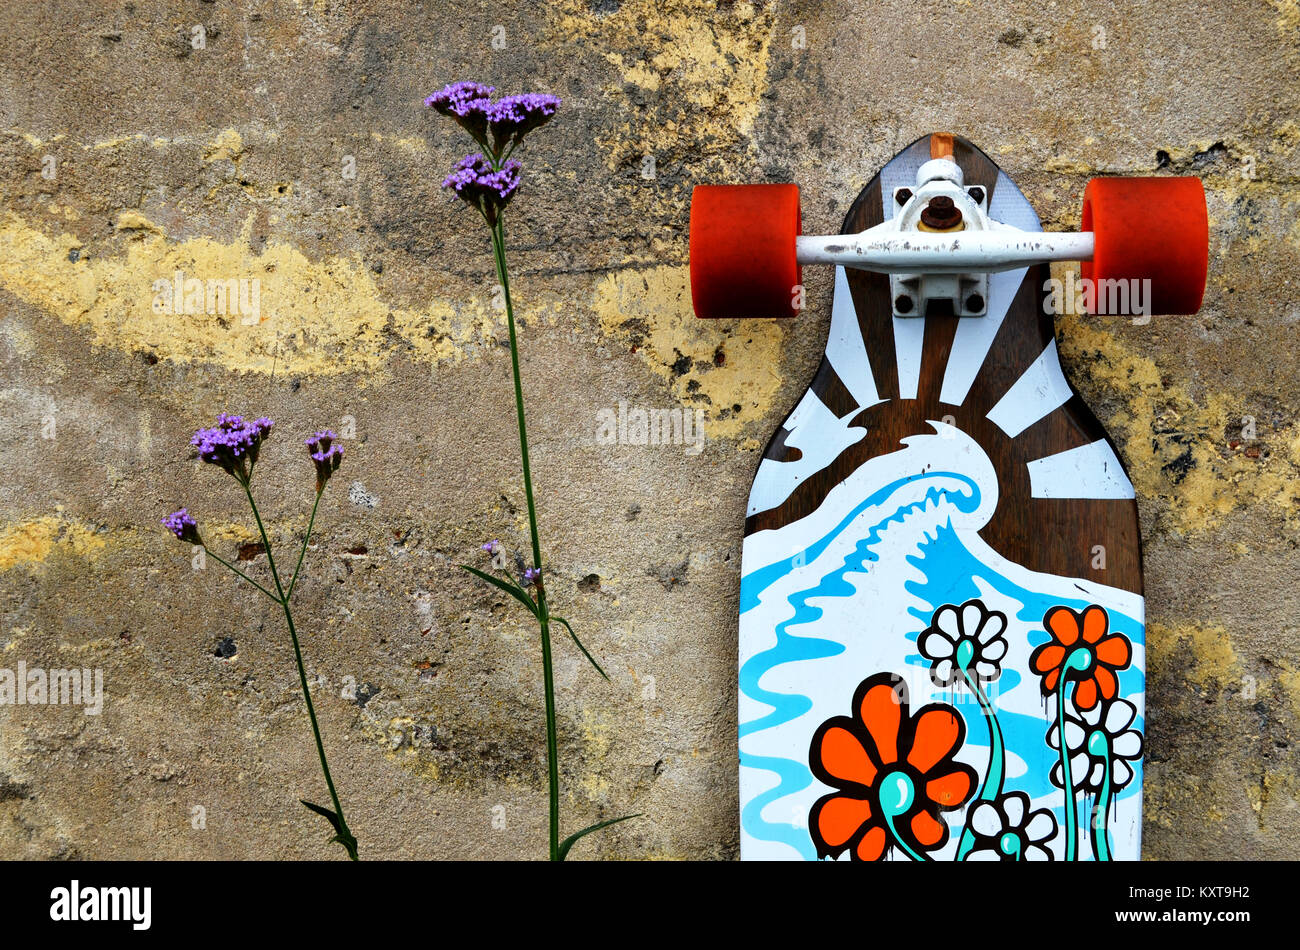 Longskate skateboard avec floral design appuyé contre un mur à côté de fleur Banque D'Images